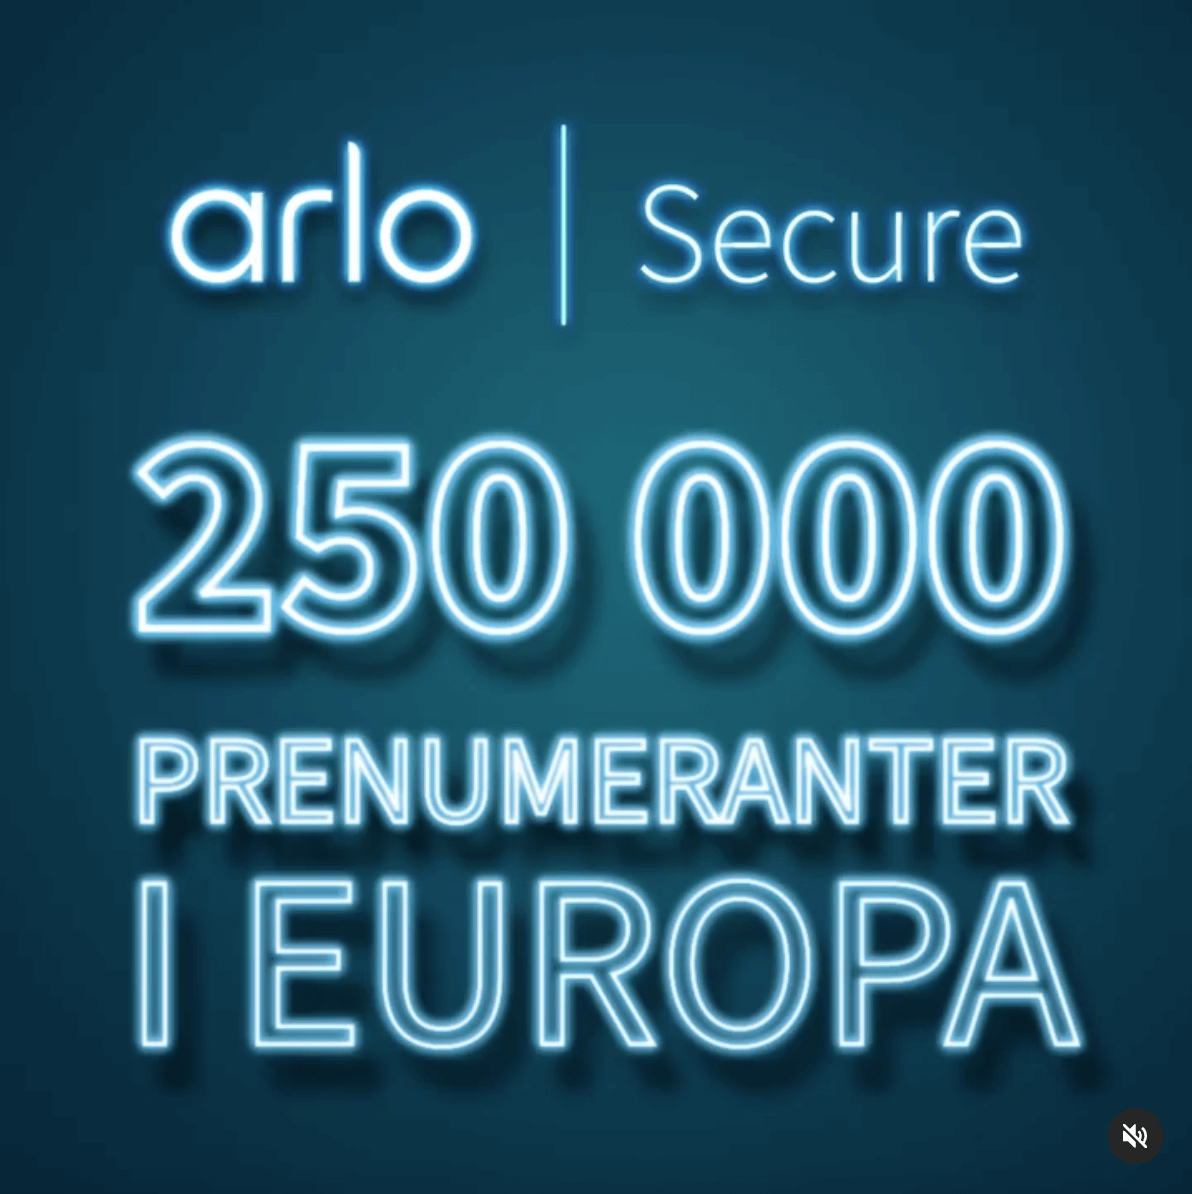 Arlos Instagram-inlägg för att fira 250 000 prenumeranter i Europa med en länk till publikationen.